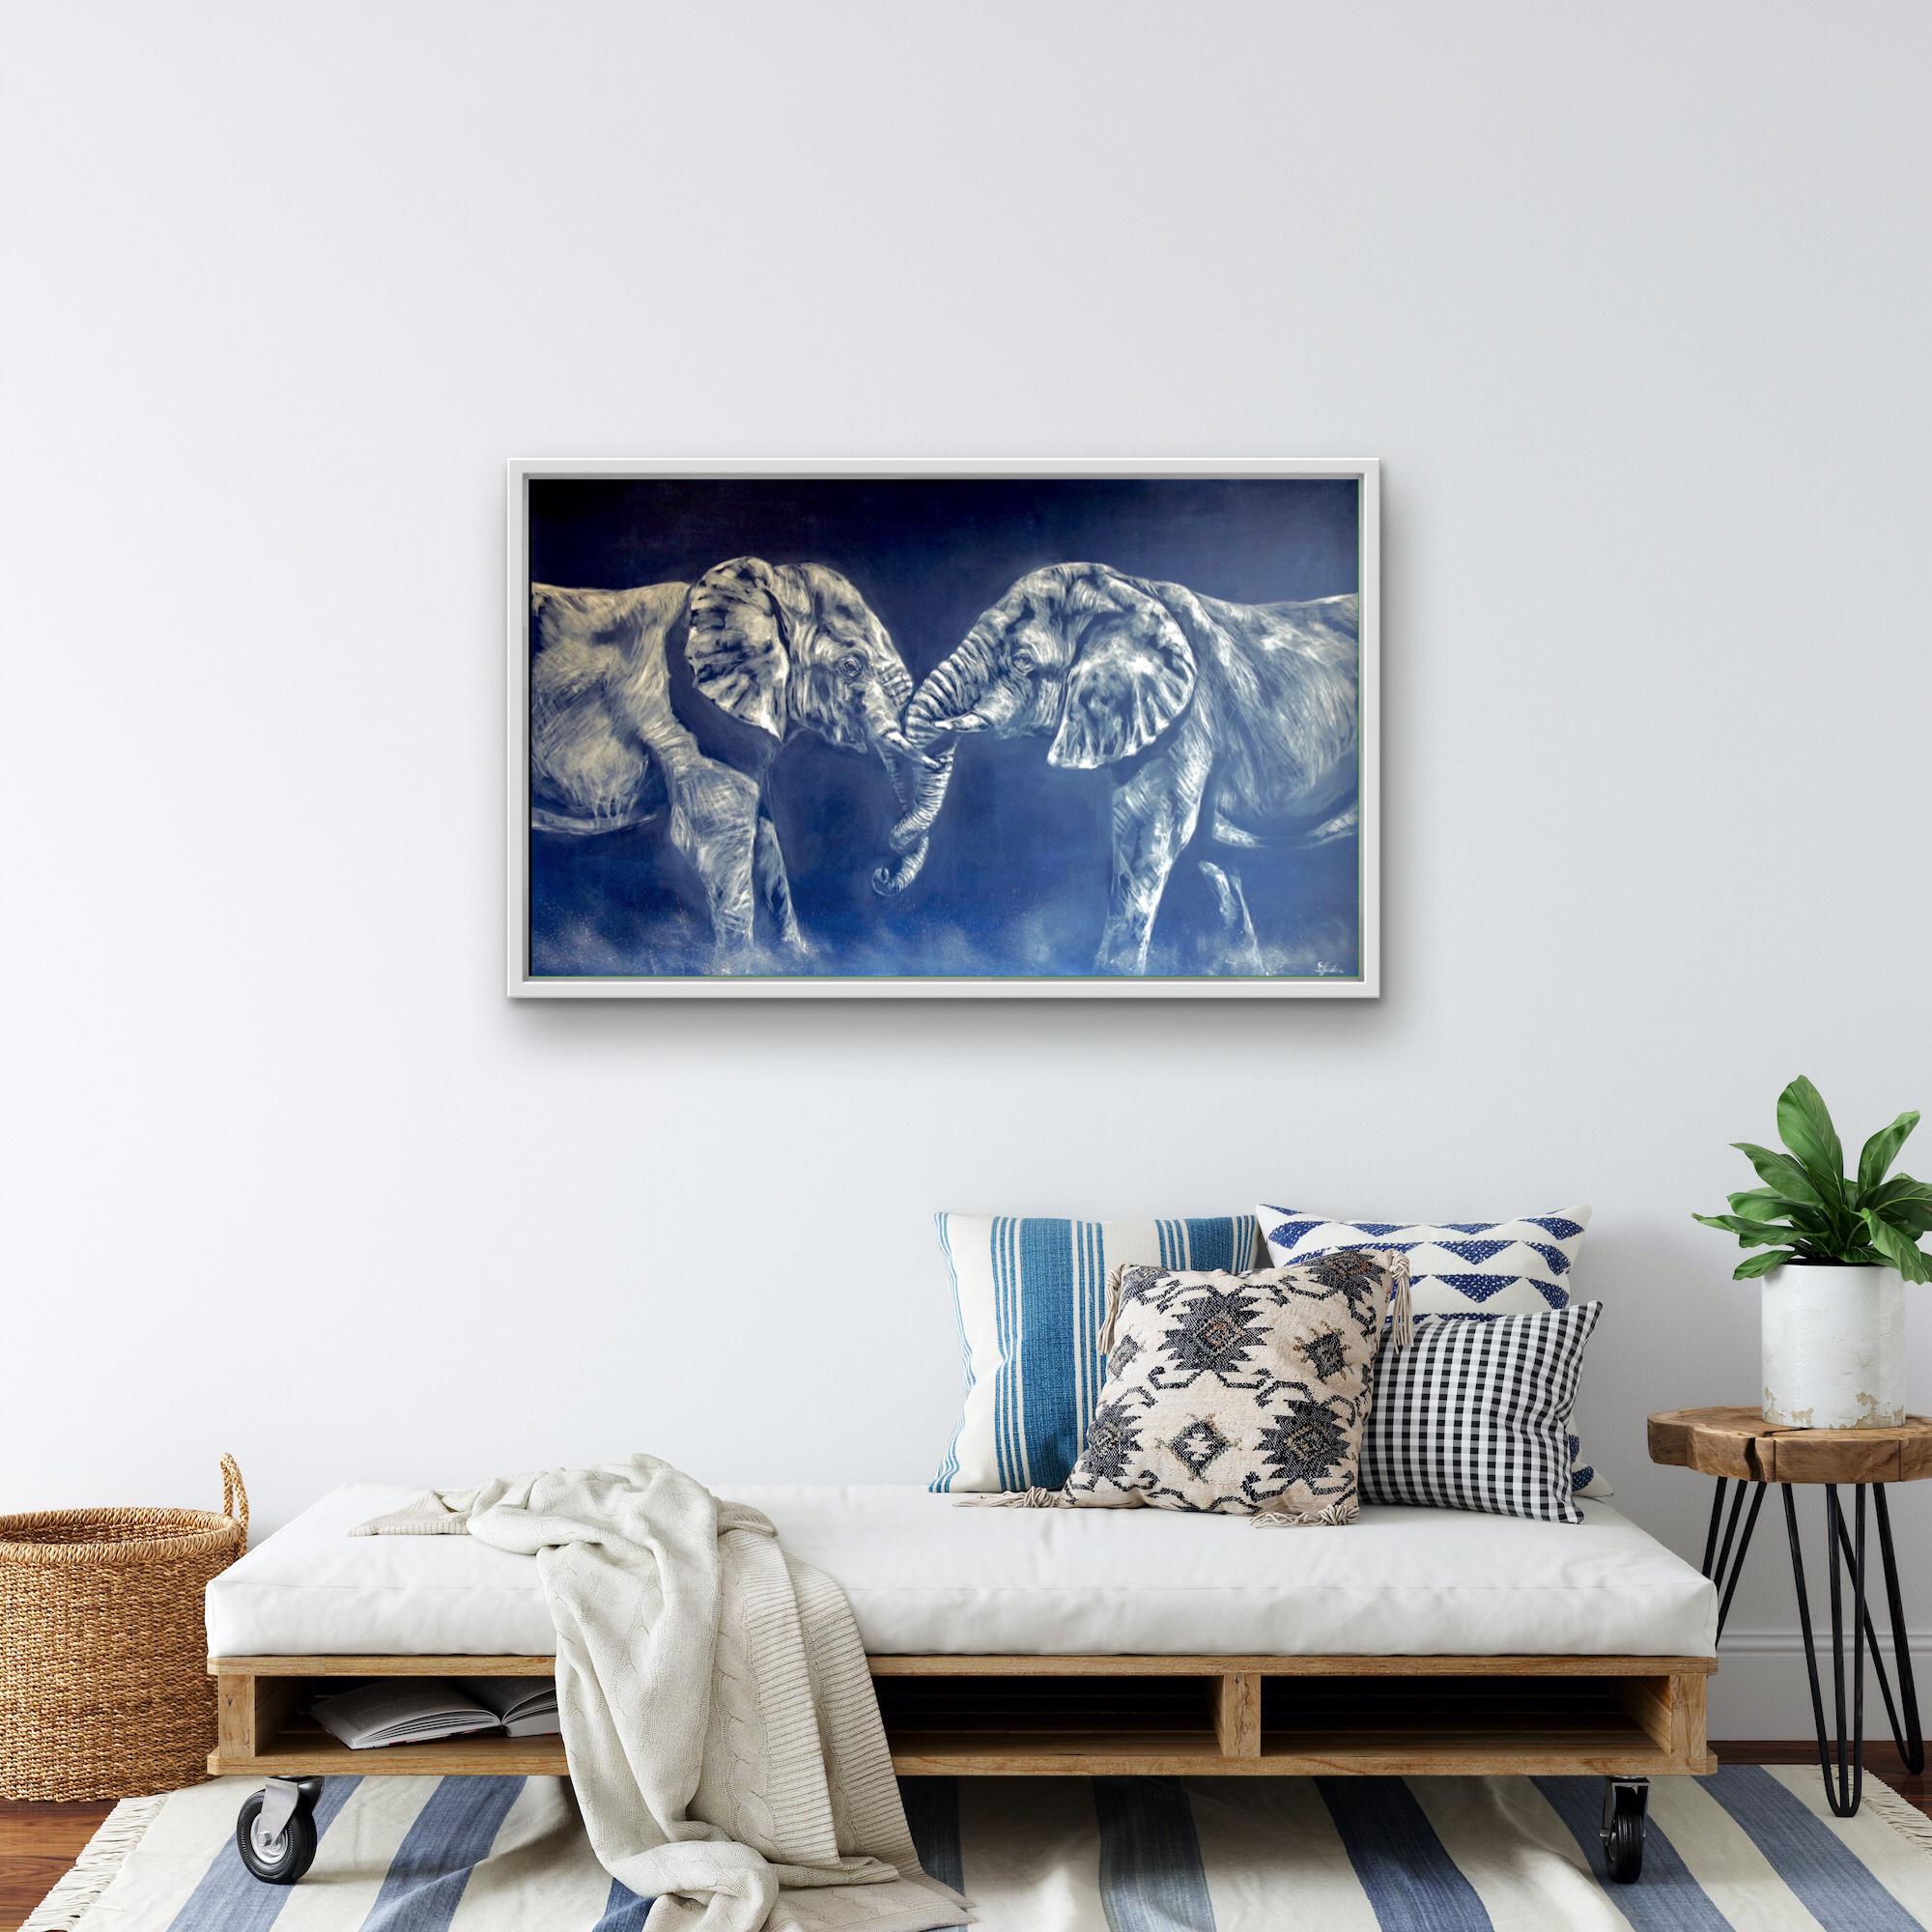 Duel est une peinture à l'huile originale de Sophie Harden. Ce magnifique tableau représentant deux éléphants mâles en train de se battre, soulevant la poussière sur leur passage, a été inspiré par les voyages de Sophie au Kenya. Peint sur un fond